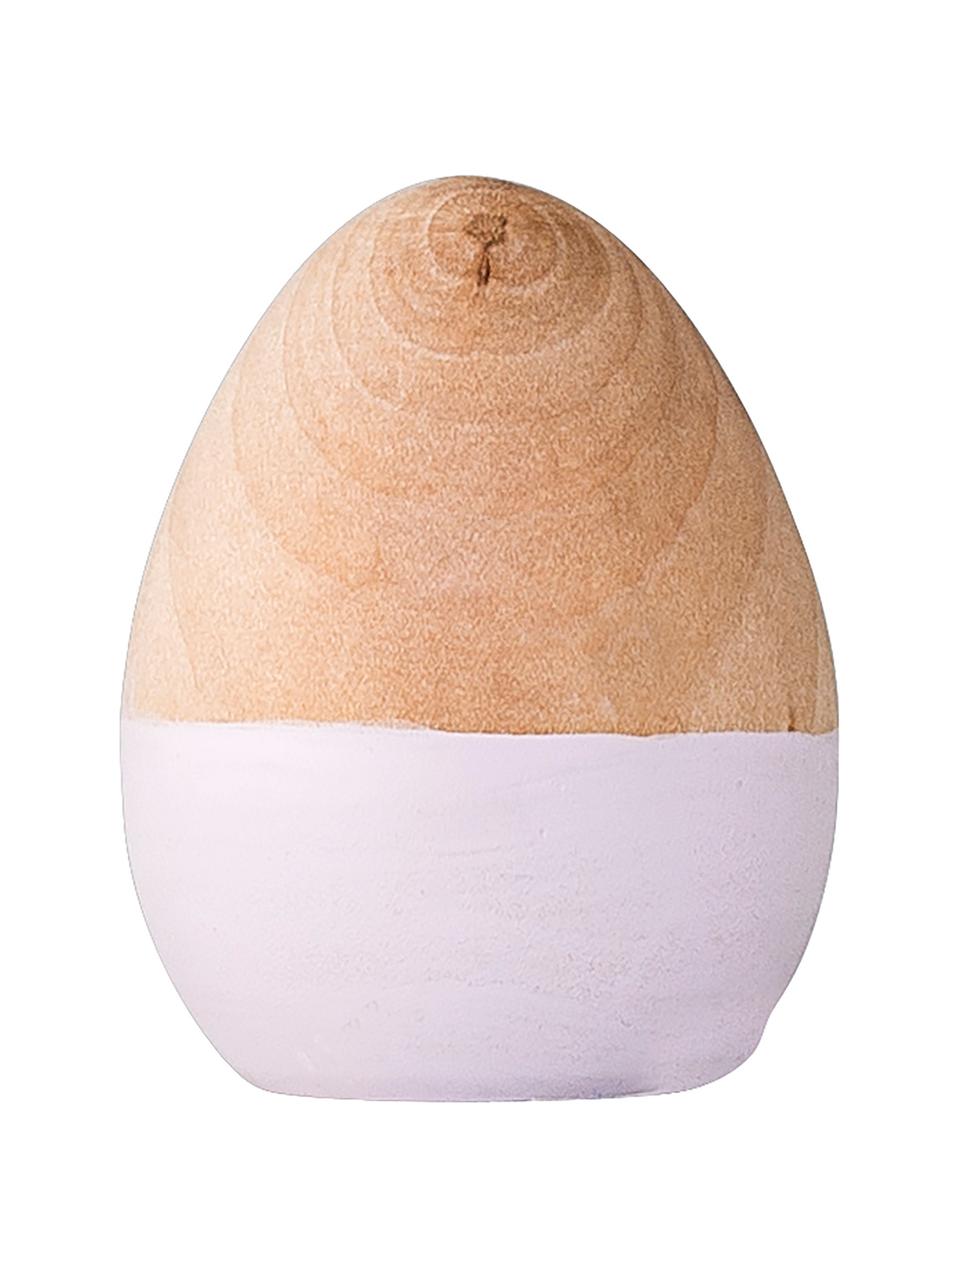 Dekoratívne veľkonočné vajíčko Nature, Breza, Svetlohnedá, biela, Ø 4, V 5 cm